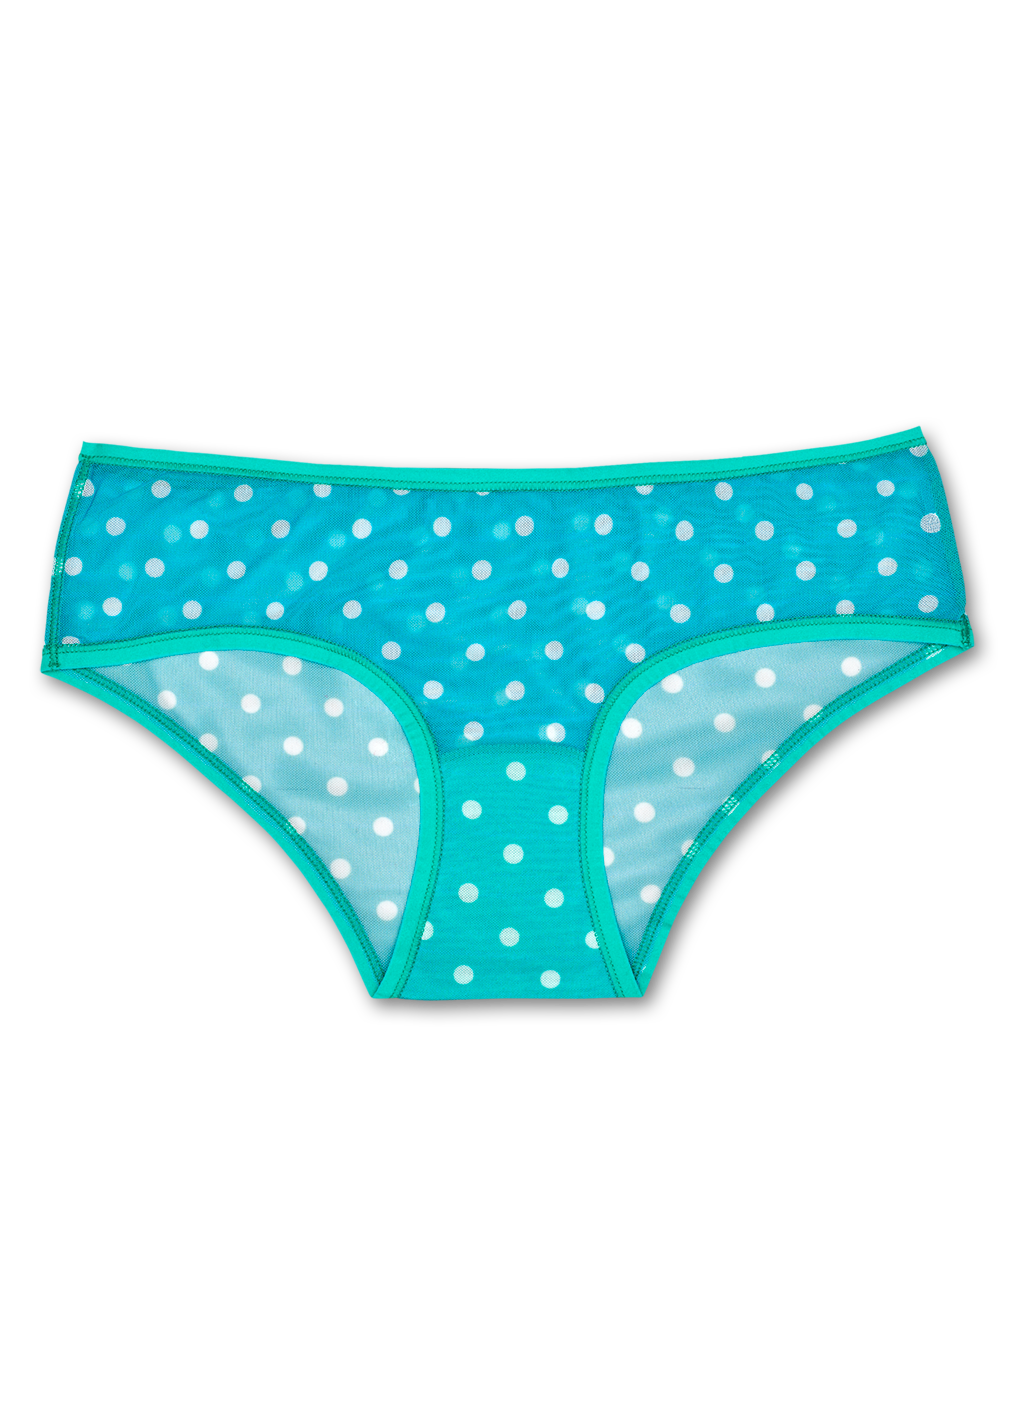 Women's Mesh Underwear: Turquoise Dot style | Happy Socks